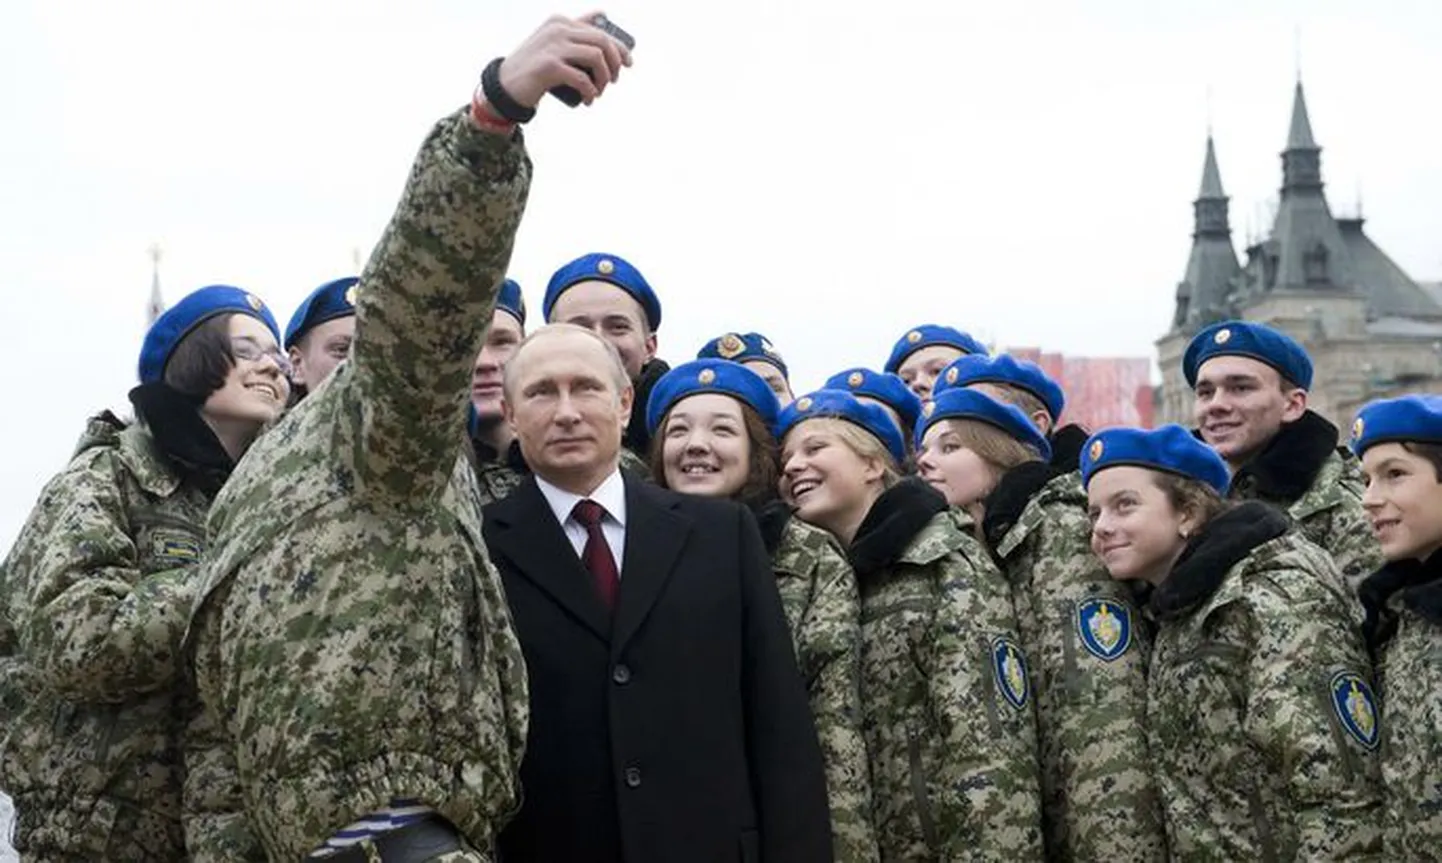 Президент России Владимир Путин делает селфи с участниками военно-патриотического молодежного клуба "Вымпел".